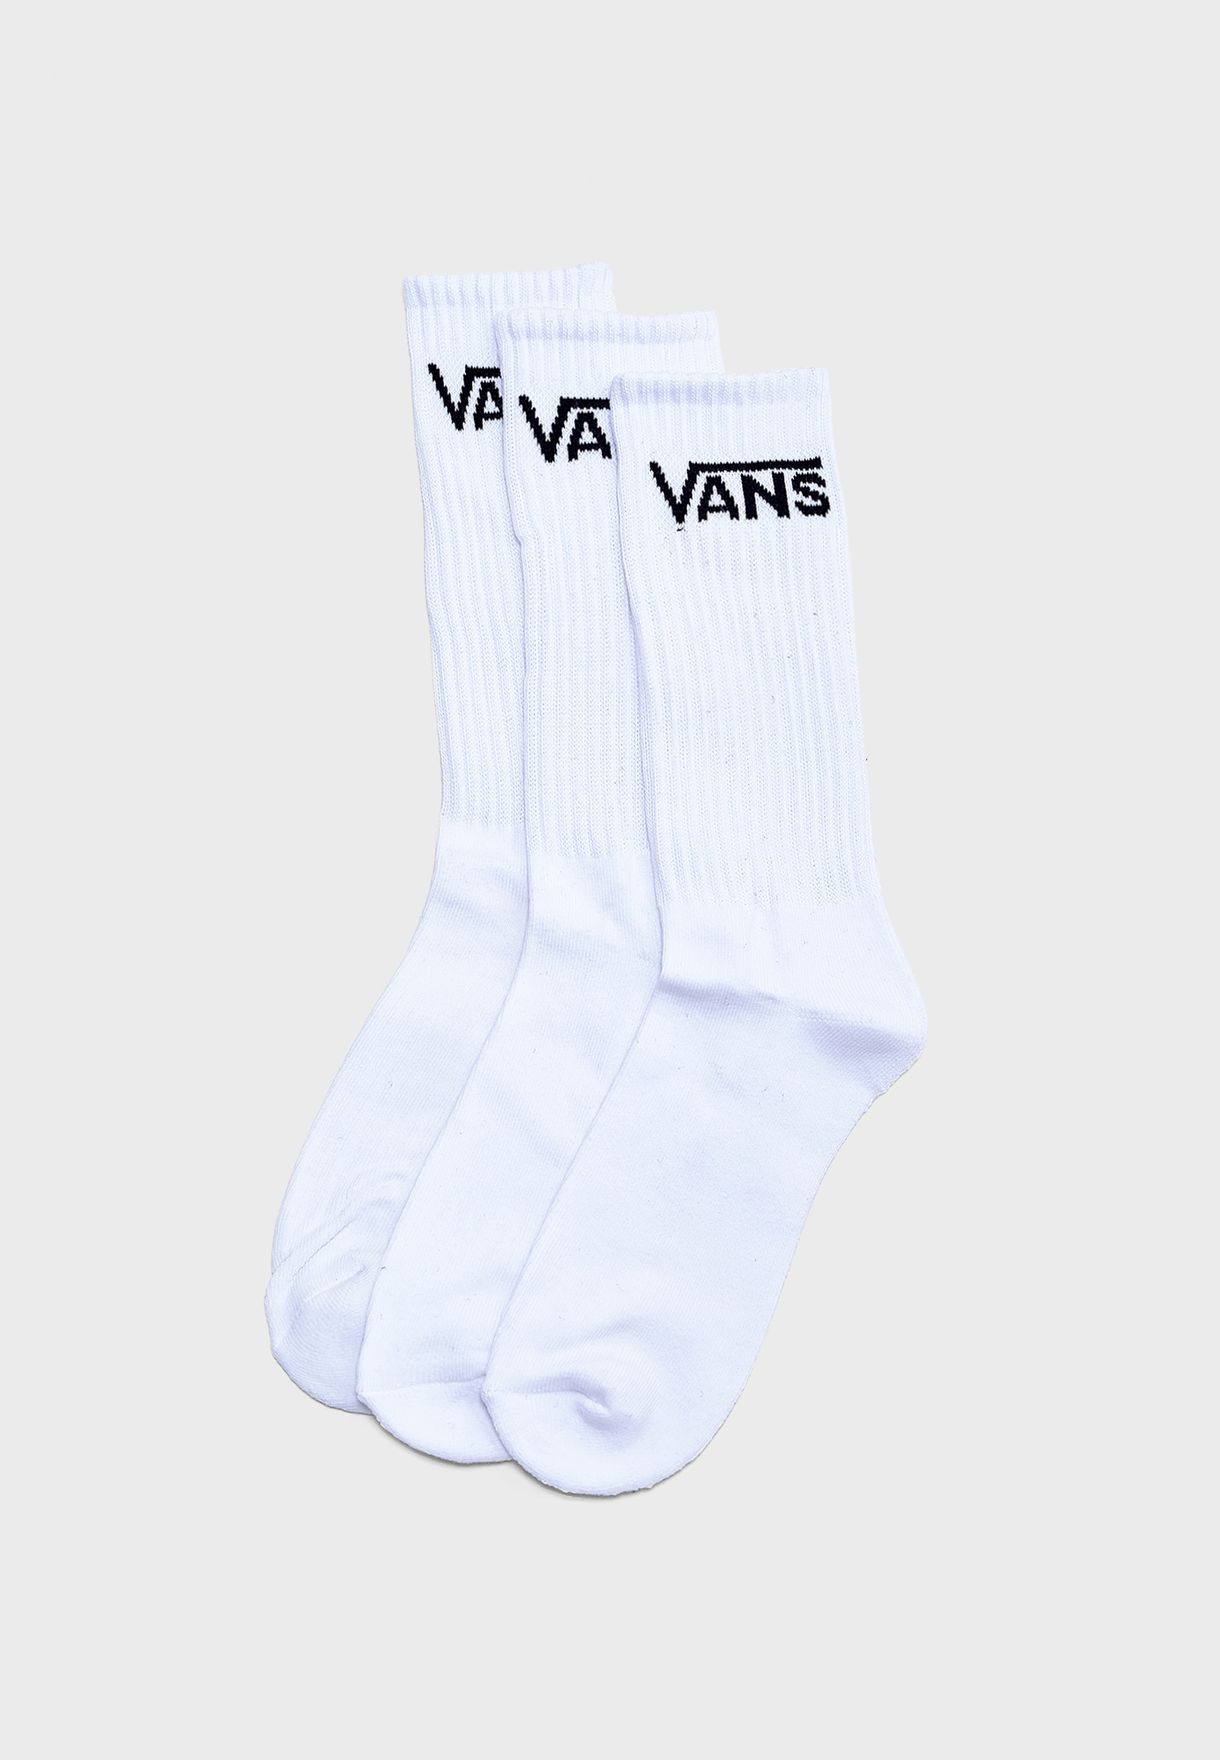 where can i buy vans socks